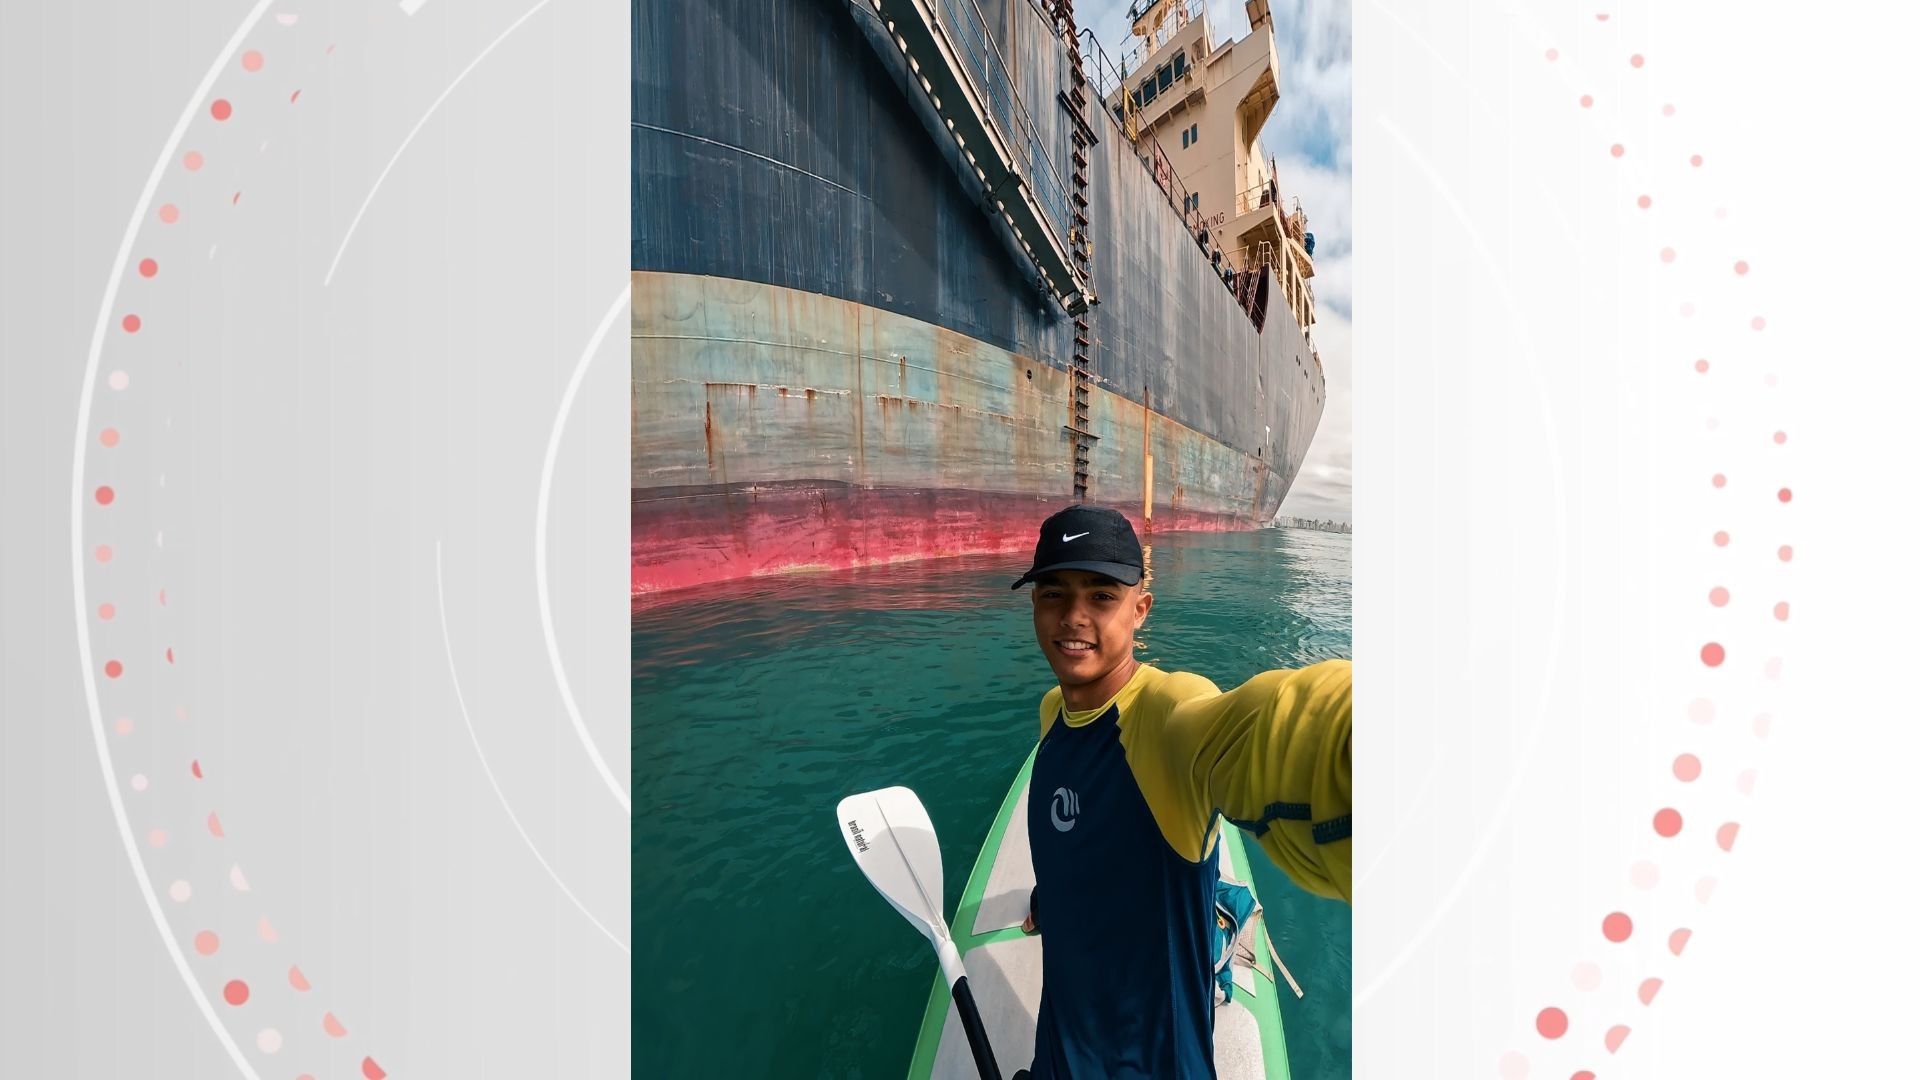 VÍDEO: Jovem viraliza se aproximando de navios em alto-mar numa prancha; Capitania alerta que prática é ilegal